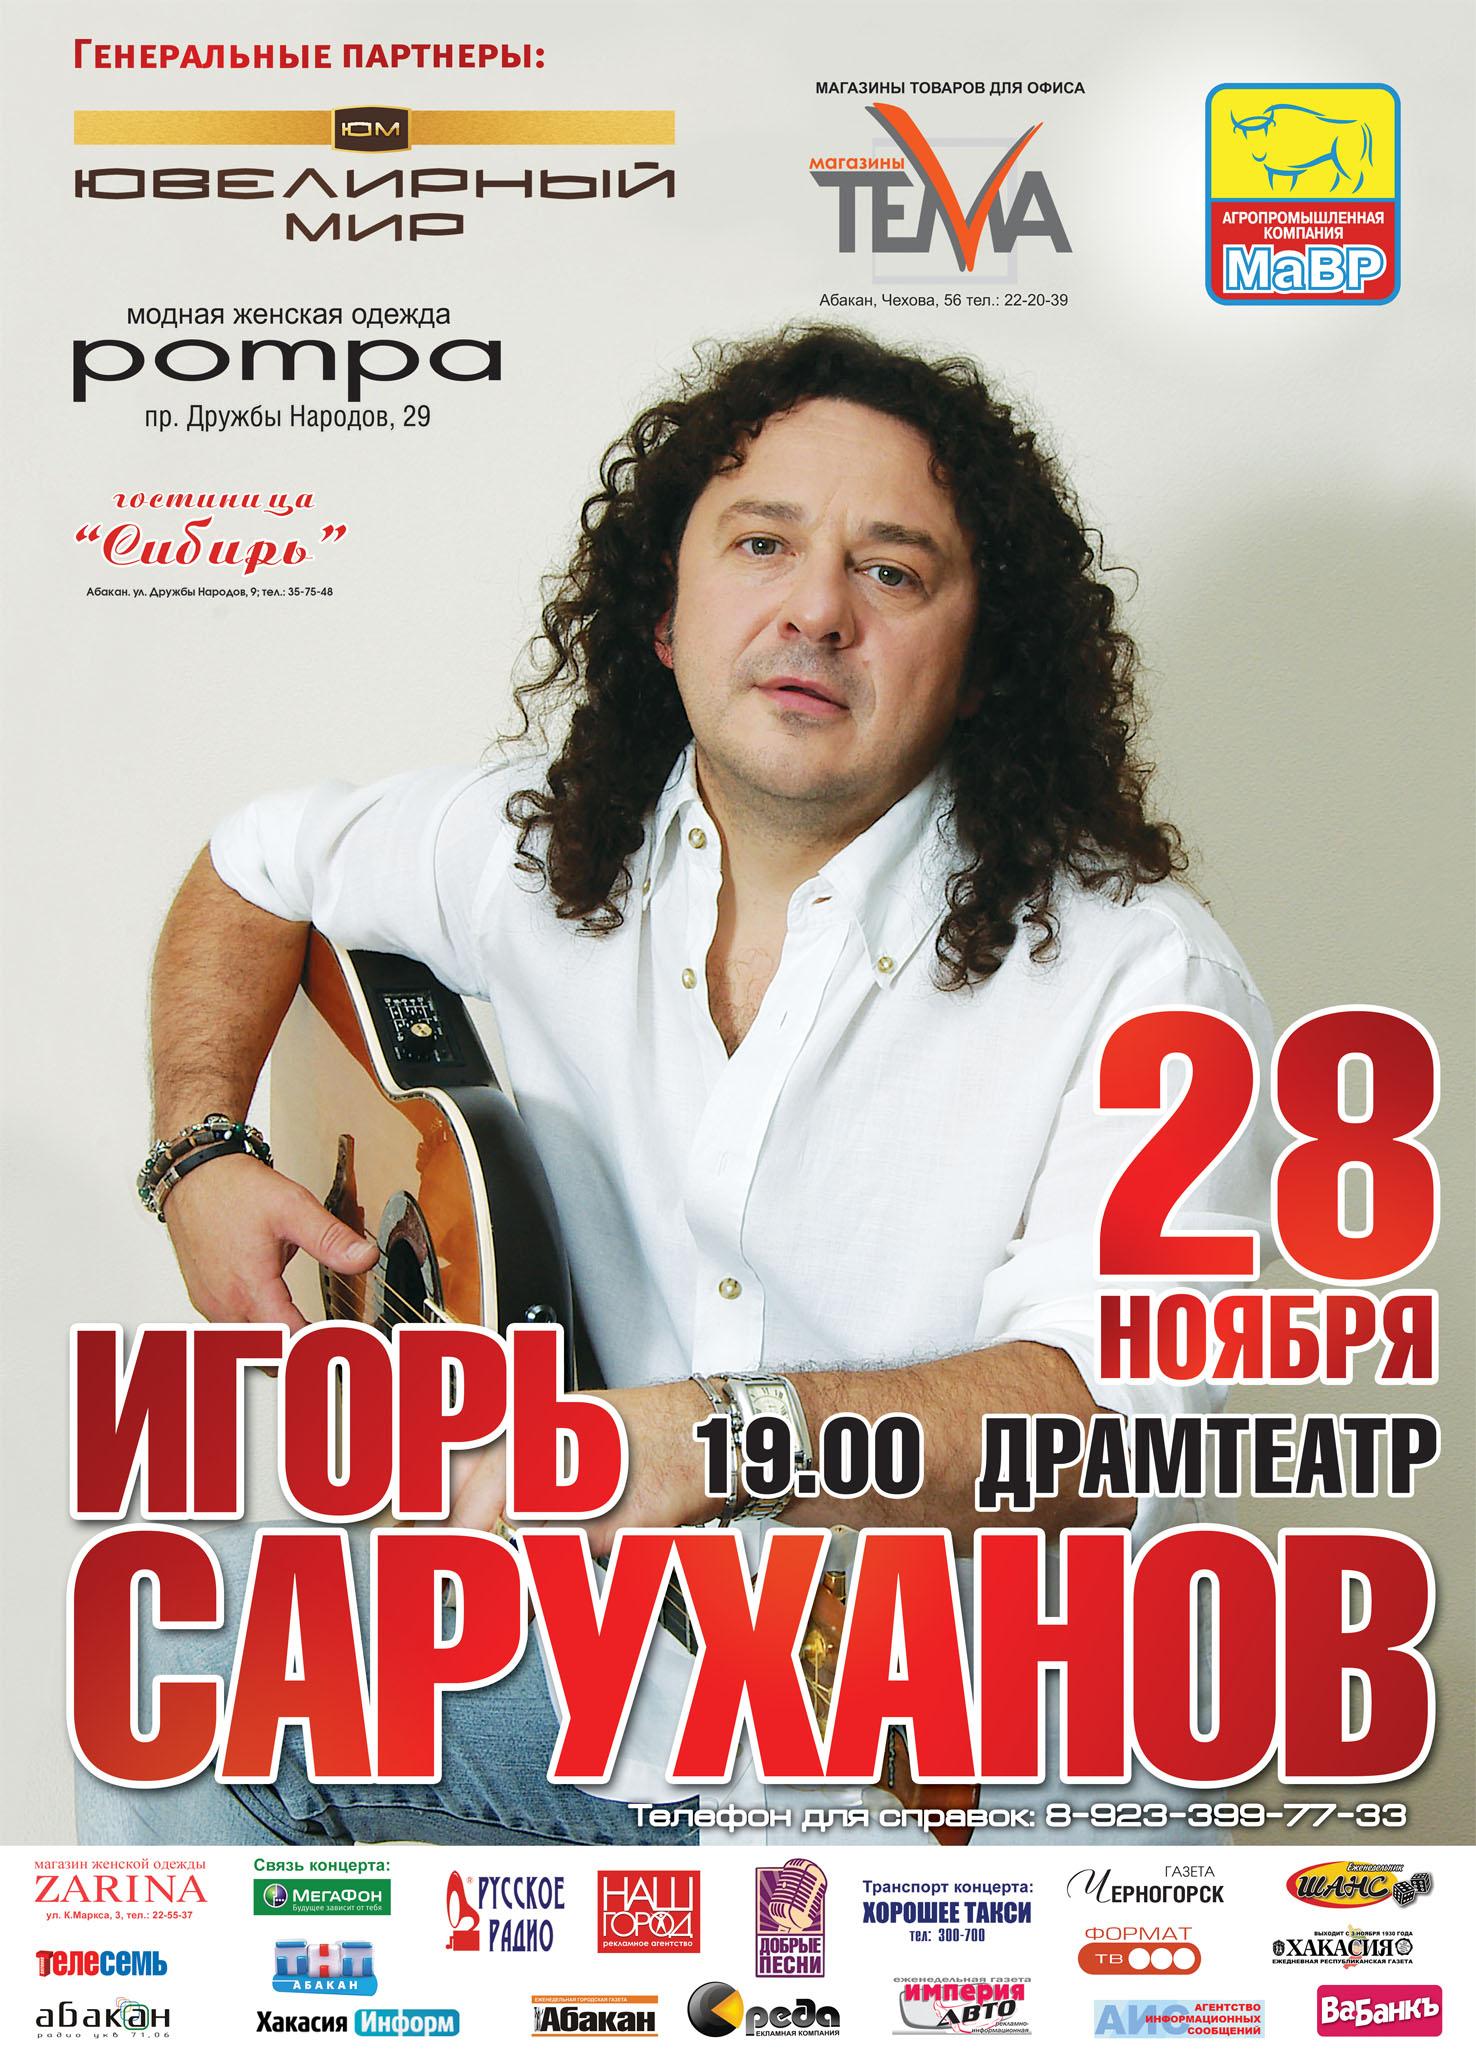 Концерт Игоря Саруханова. Юбилейный концерт Игоря крутого. Концерт Игоря Саруханова в Новосибирске.